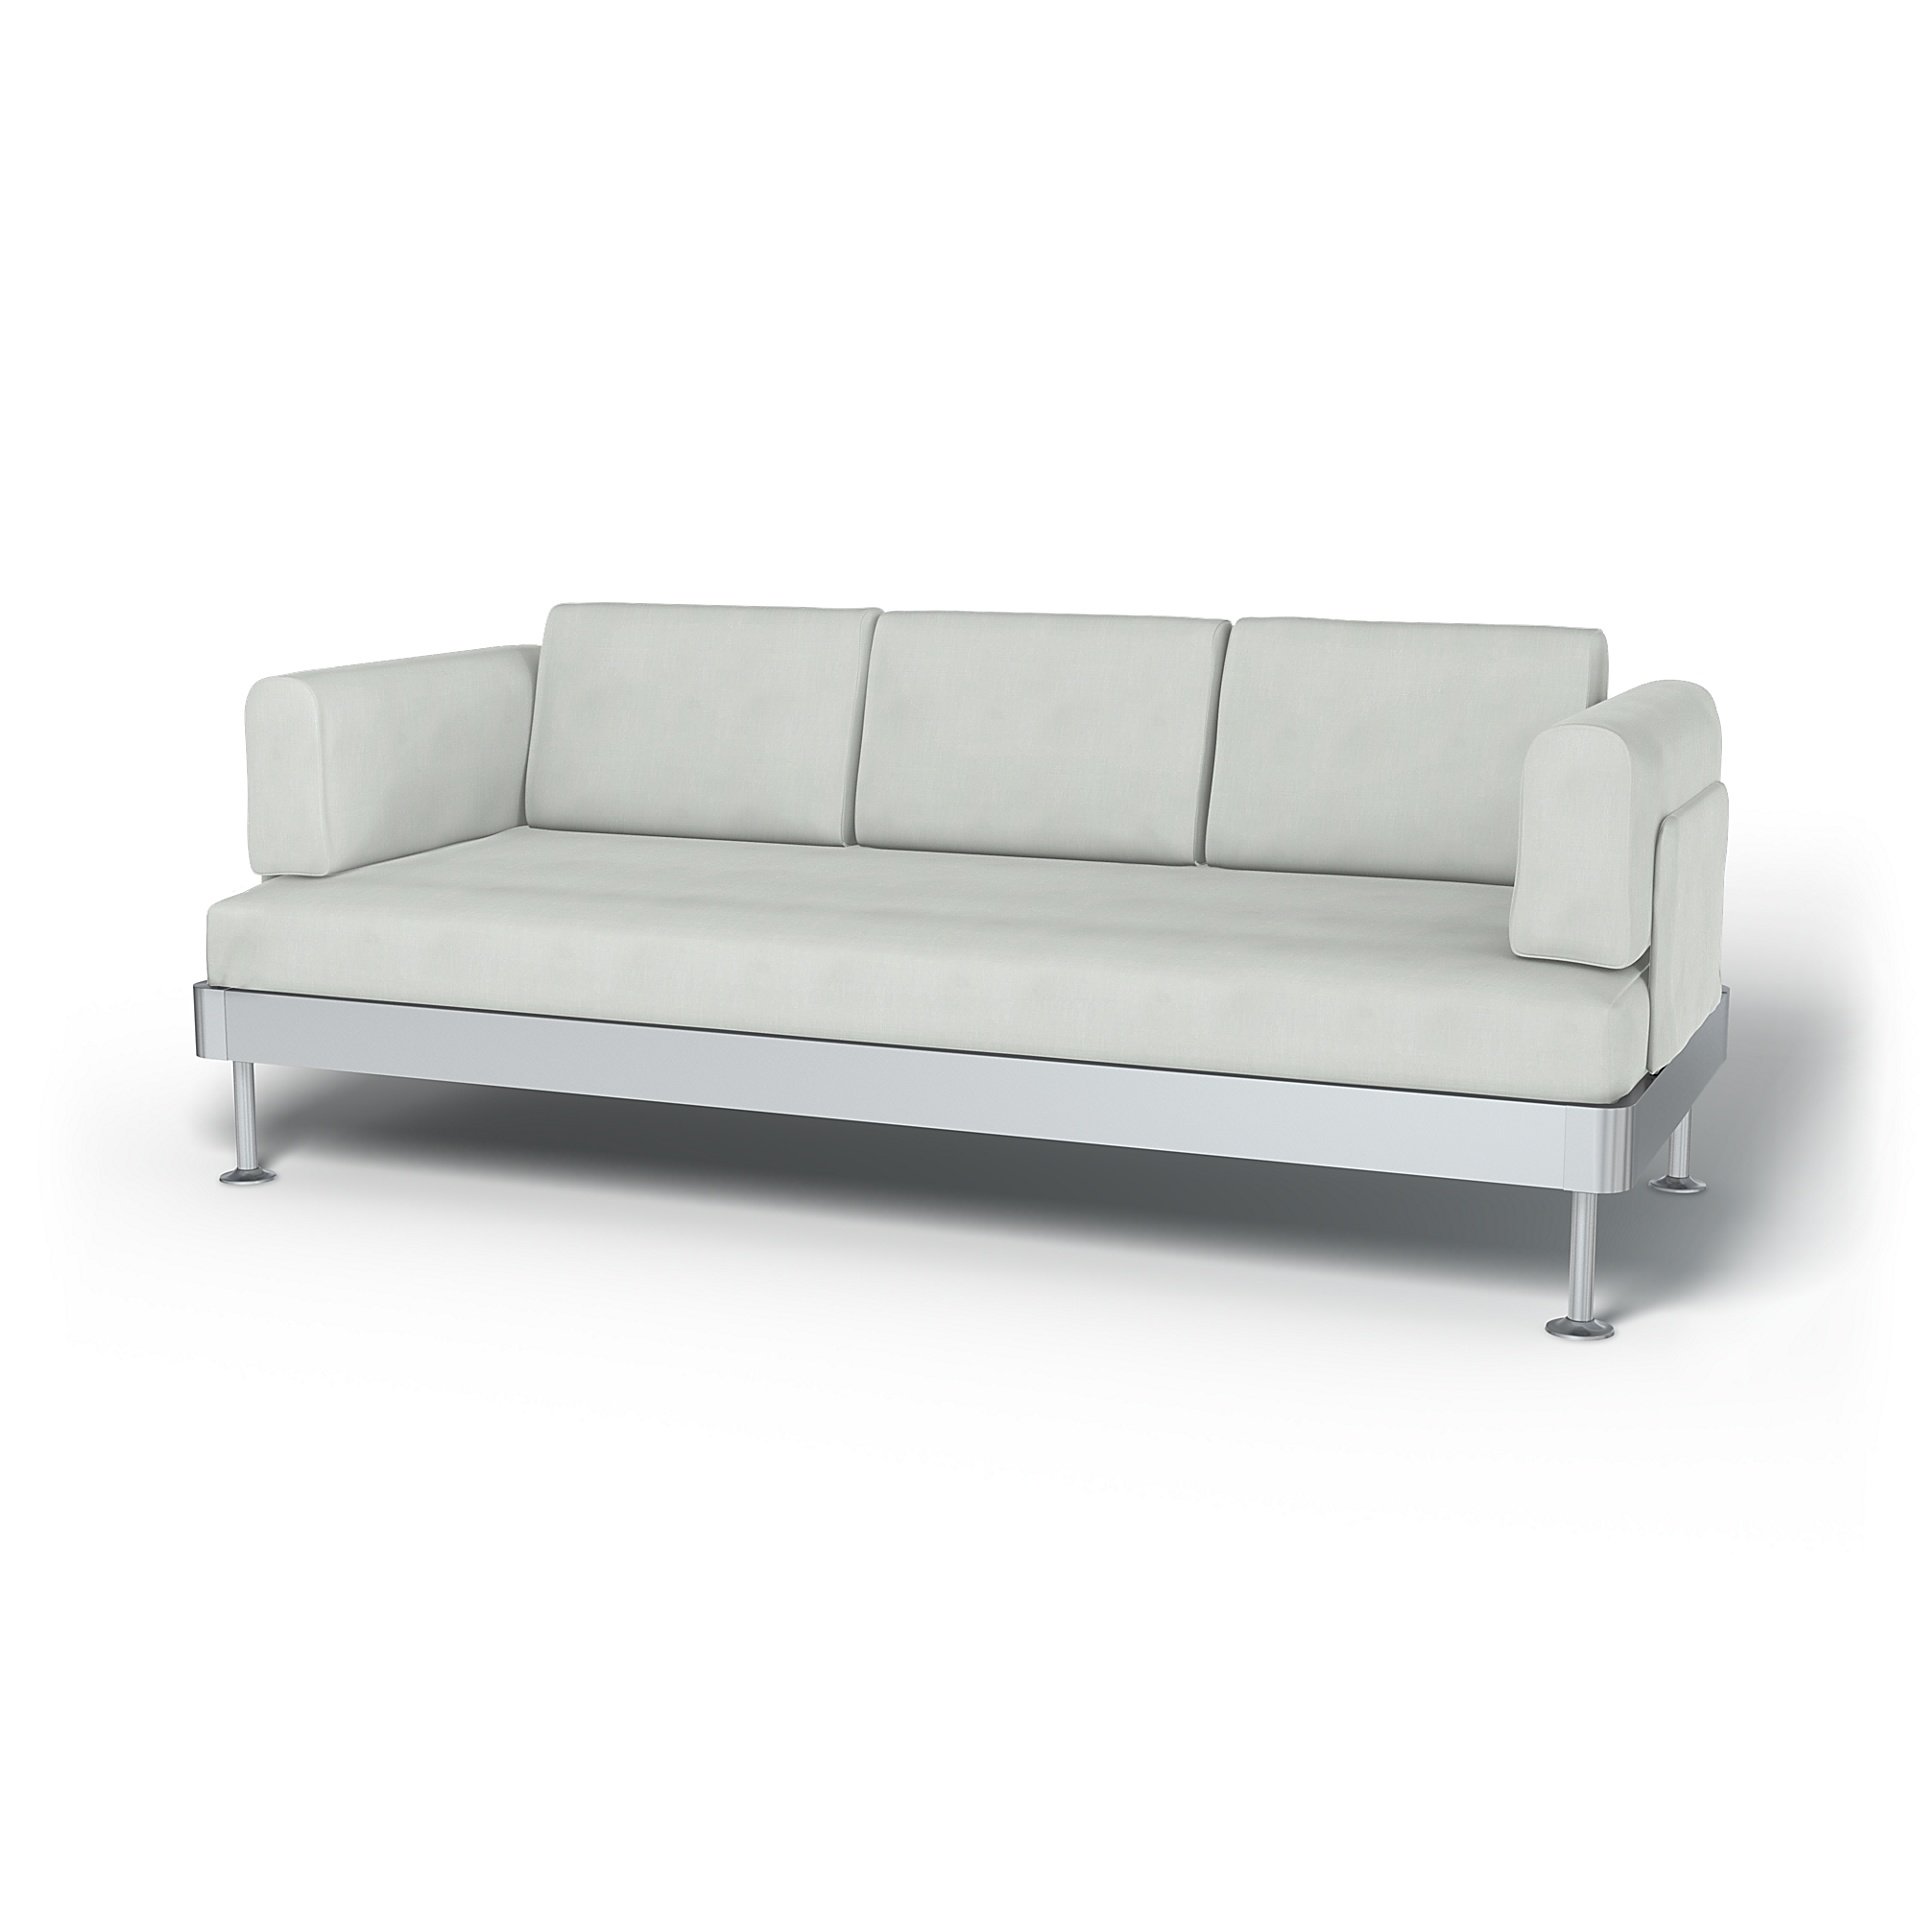 IKEA - Delaktig 3 Seater Sofa Cover, Silver Grey, Linen - Bemz